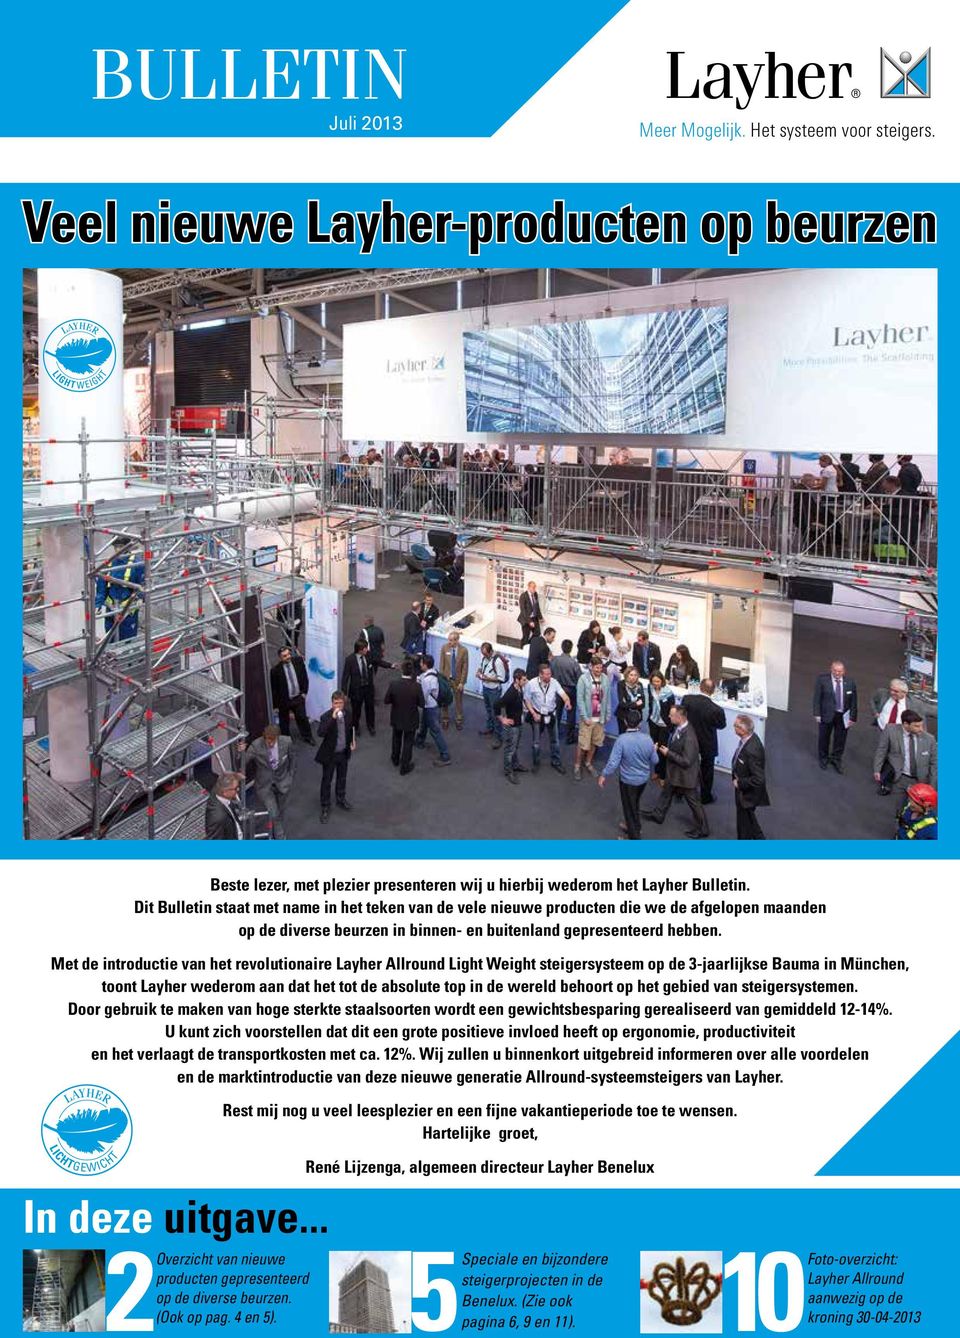 Met de introductie van het revolutionaire Layher Allround Light Weight steigersysteem op de 3-jaarlijkse Bauma in München, toont Layher wederom aan dat het tot de absolute top in de wereld behoort op